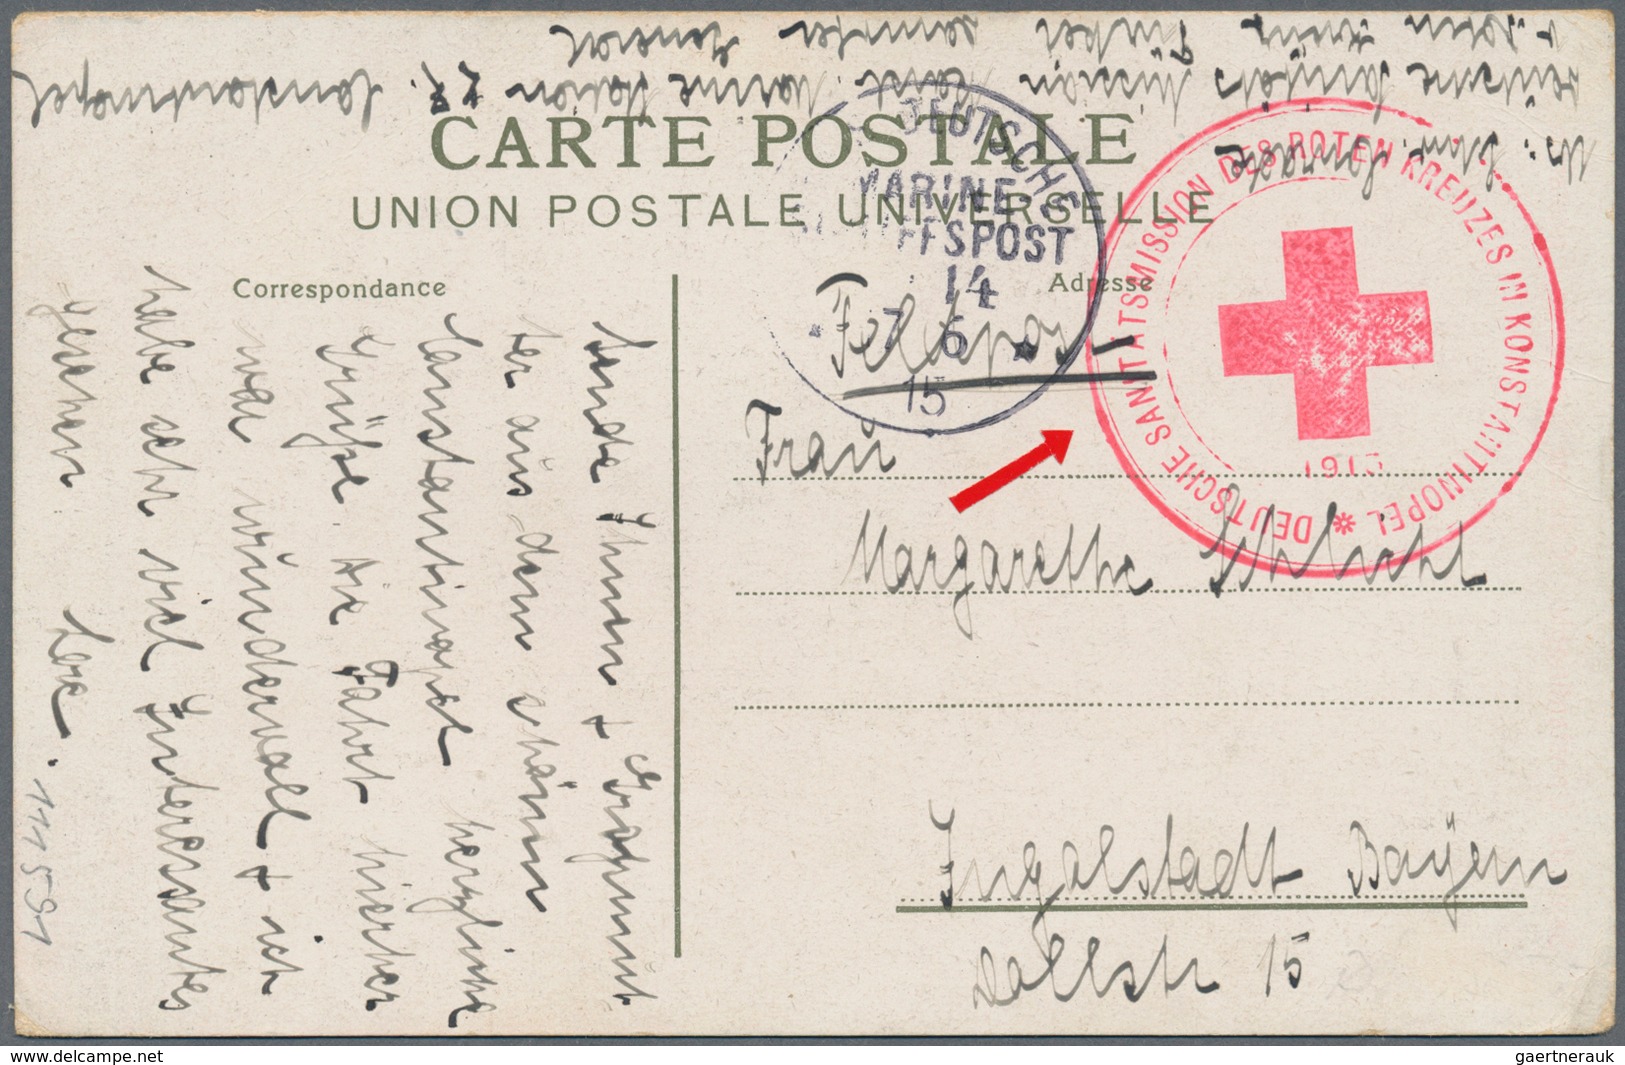 Thematik: Rotes Kreuz / Red Cross: 1915 Deutsches Reich Roter Feldpost-Brief-o "Deutsche Sanitätsmis - Croix-Rouge